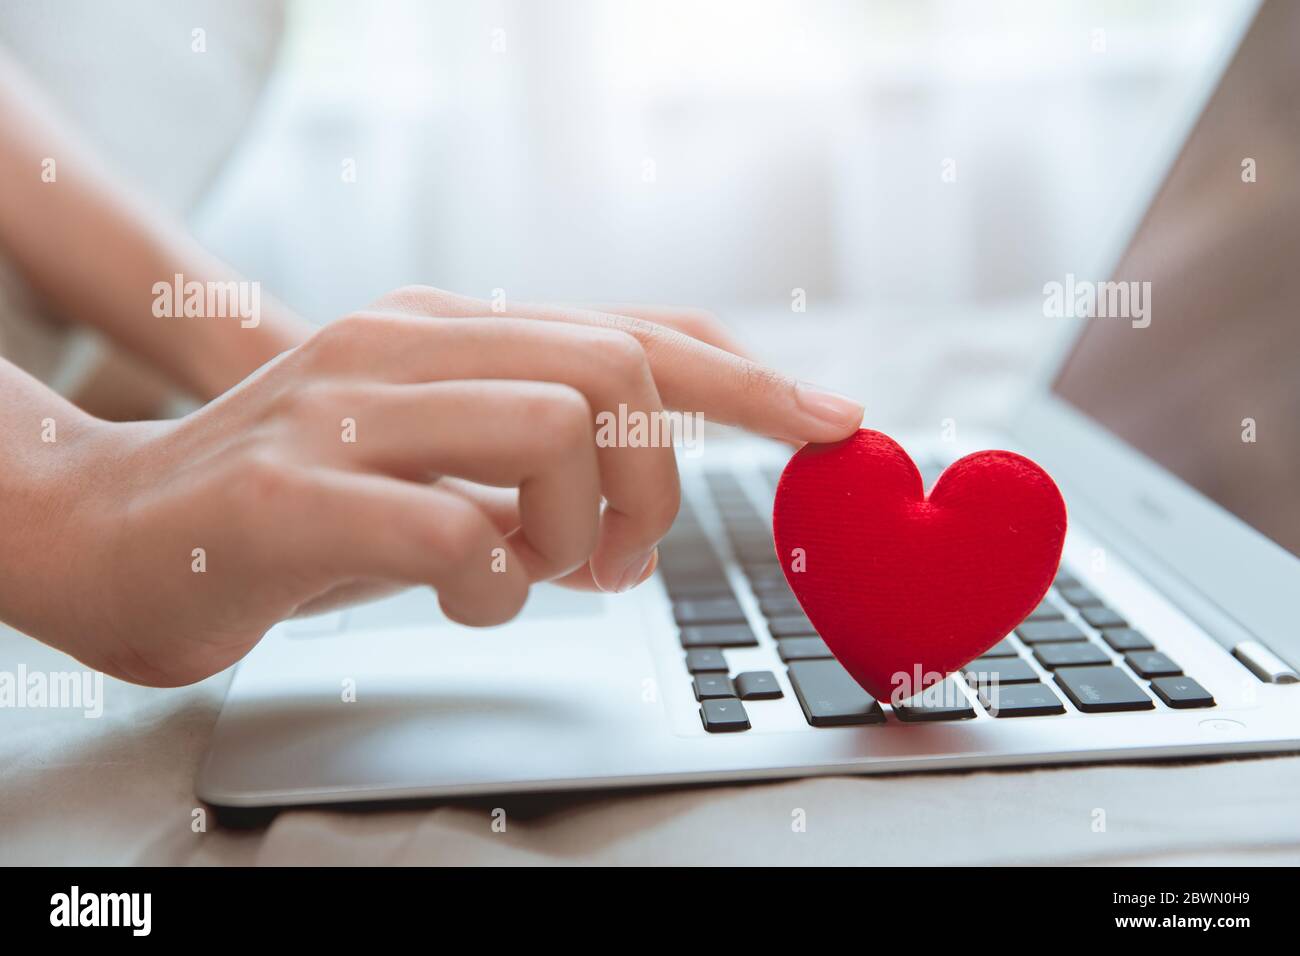 Main touchant coeur rouge sur le clavier d'ordinateur portable pour flirt amour chat ou l'amant en ligne messagerie texte pour trouver date couple pendant le séjour à la maison coronavirus pandem Banque D'Images